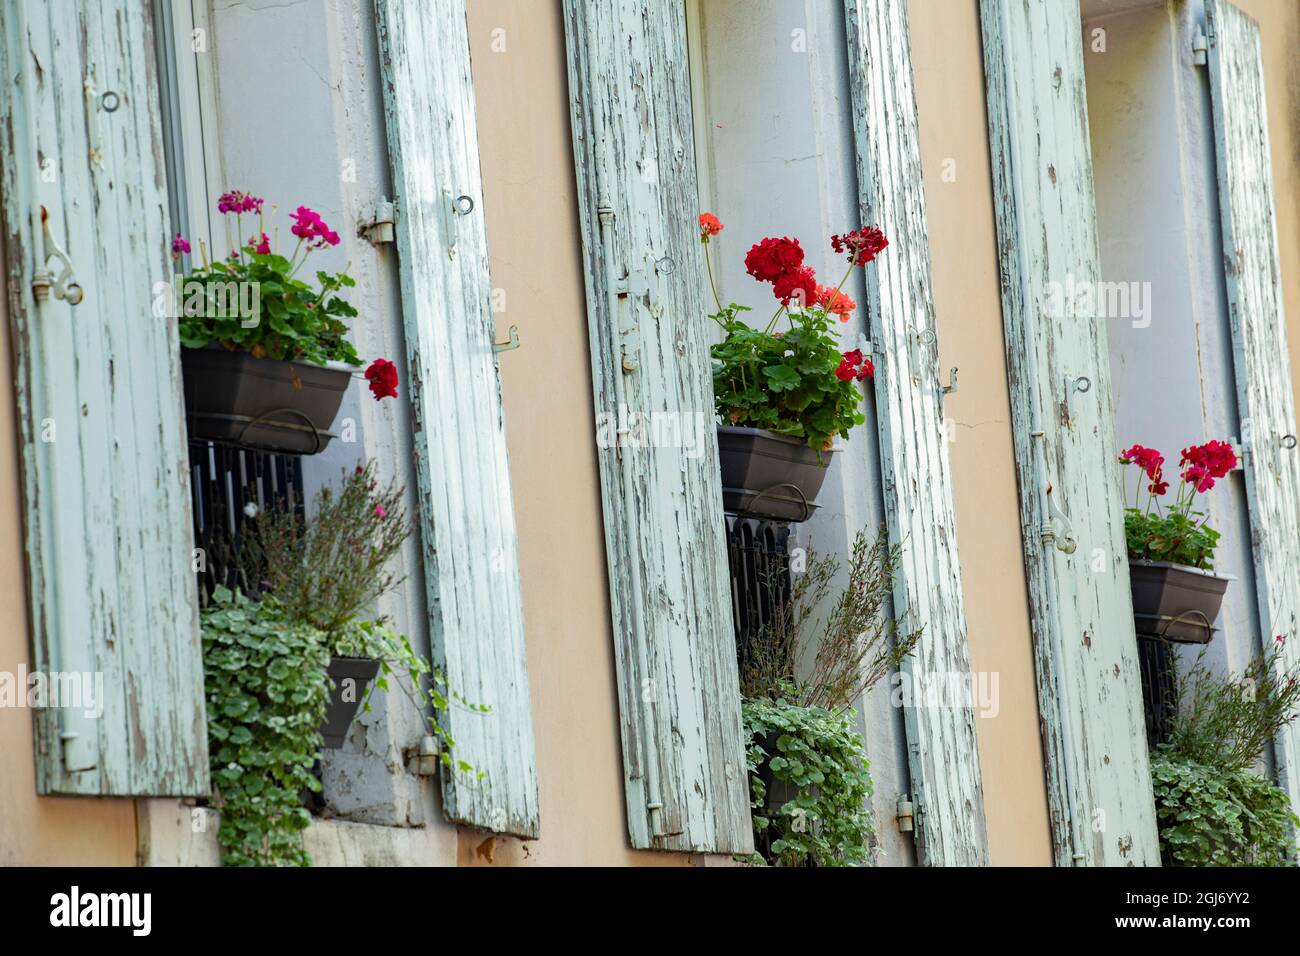 Fleurs dans la fenêtre de la maison Manosque en Provence région du Sud de la France. Banque D'Images